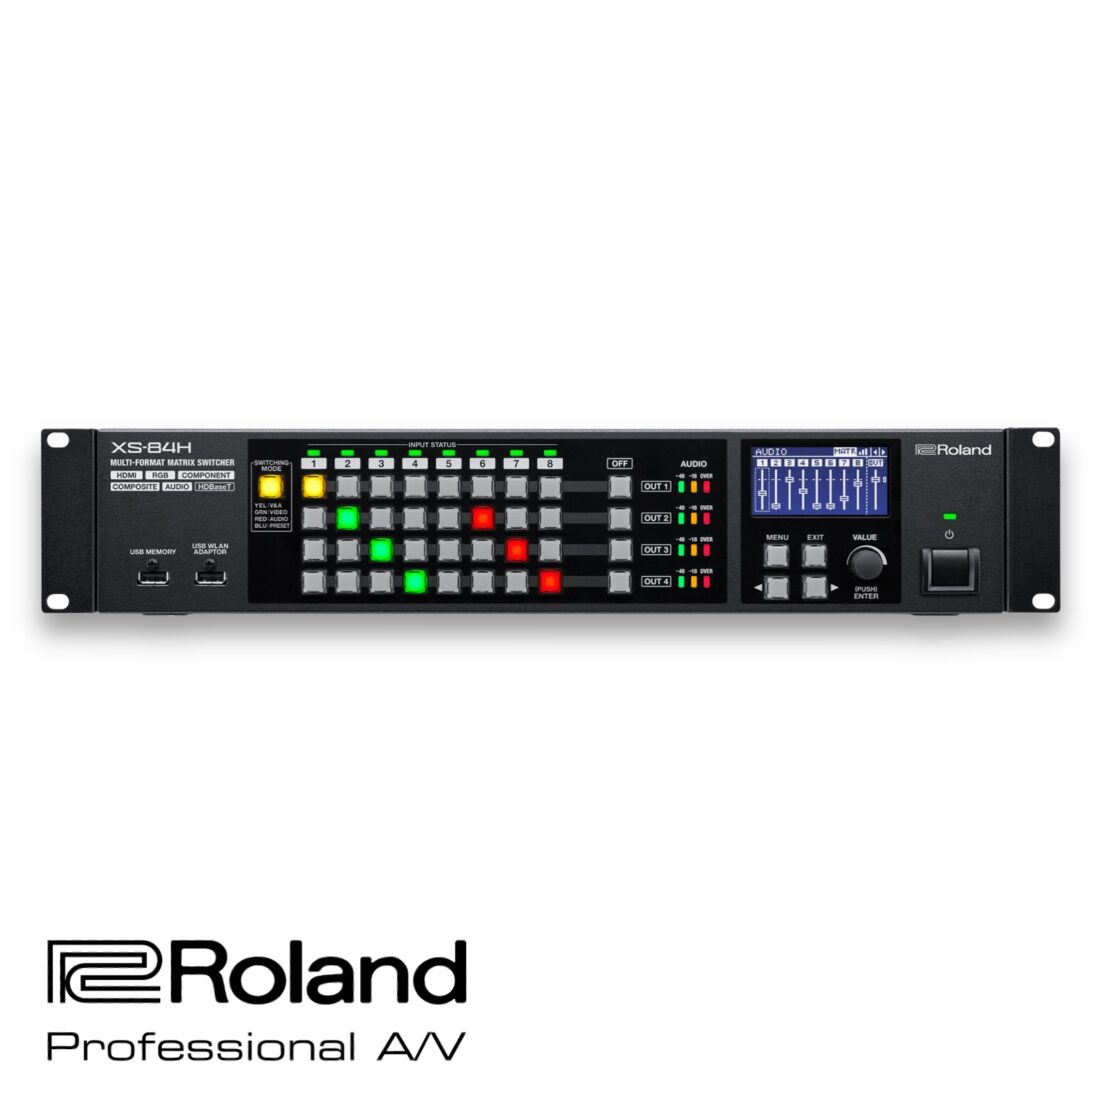 Roland XS-84H